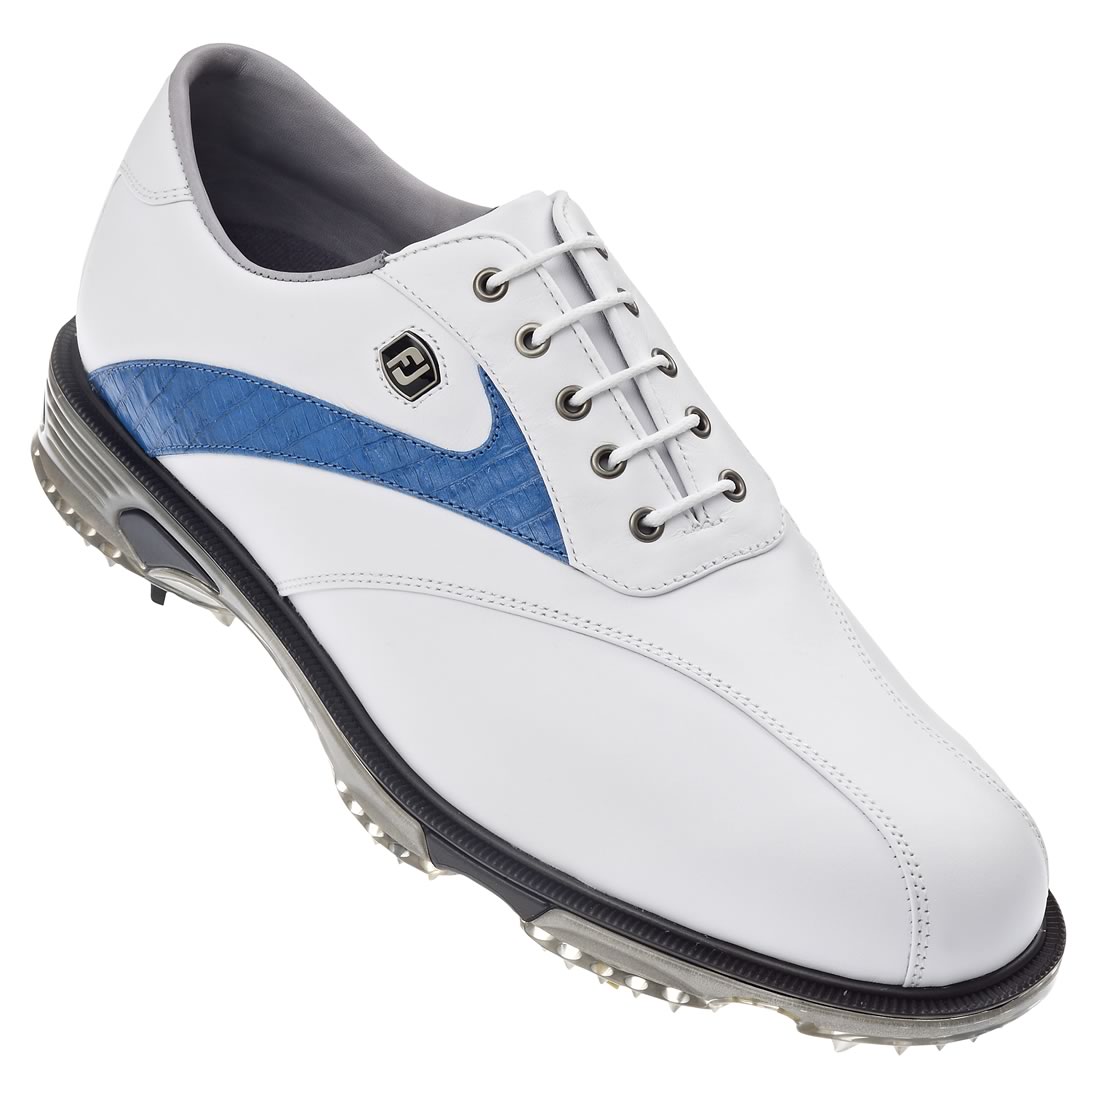 Dryjoys Tour Golf Shoes White/Blue #53685